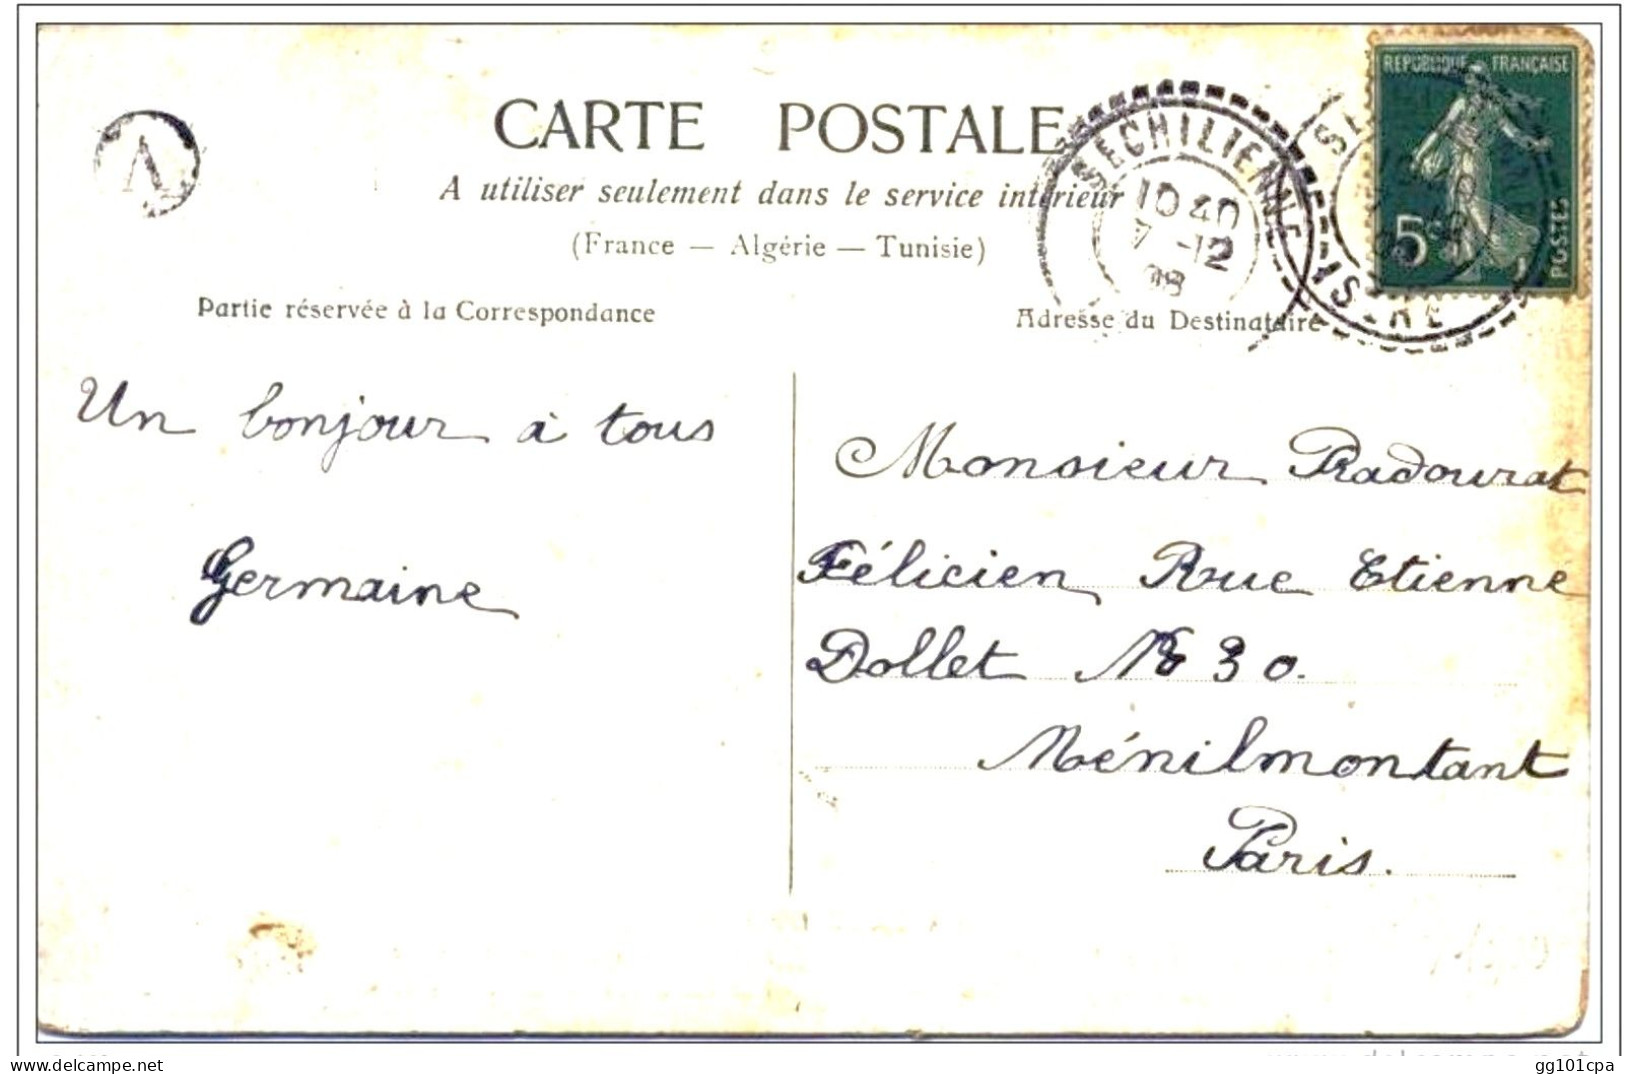 Cachet Perlé Boitier B2 "SECHILIENNE ISERE 1908" + Lettre Facteur A Cp Fantaisie - Paiement Par MANGOPAY Uniquement - Manual Postmarks